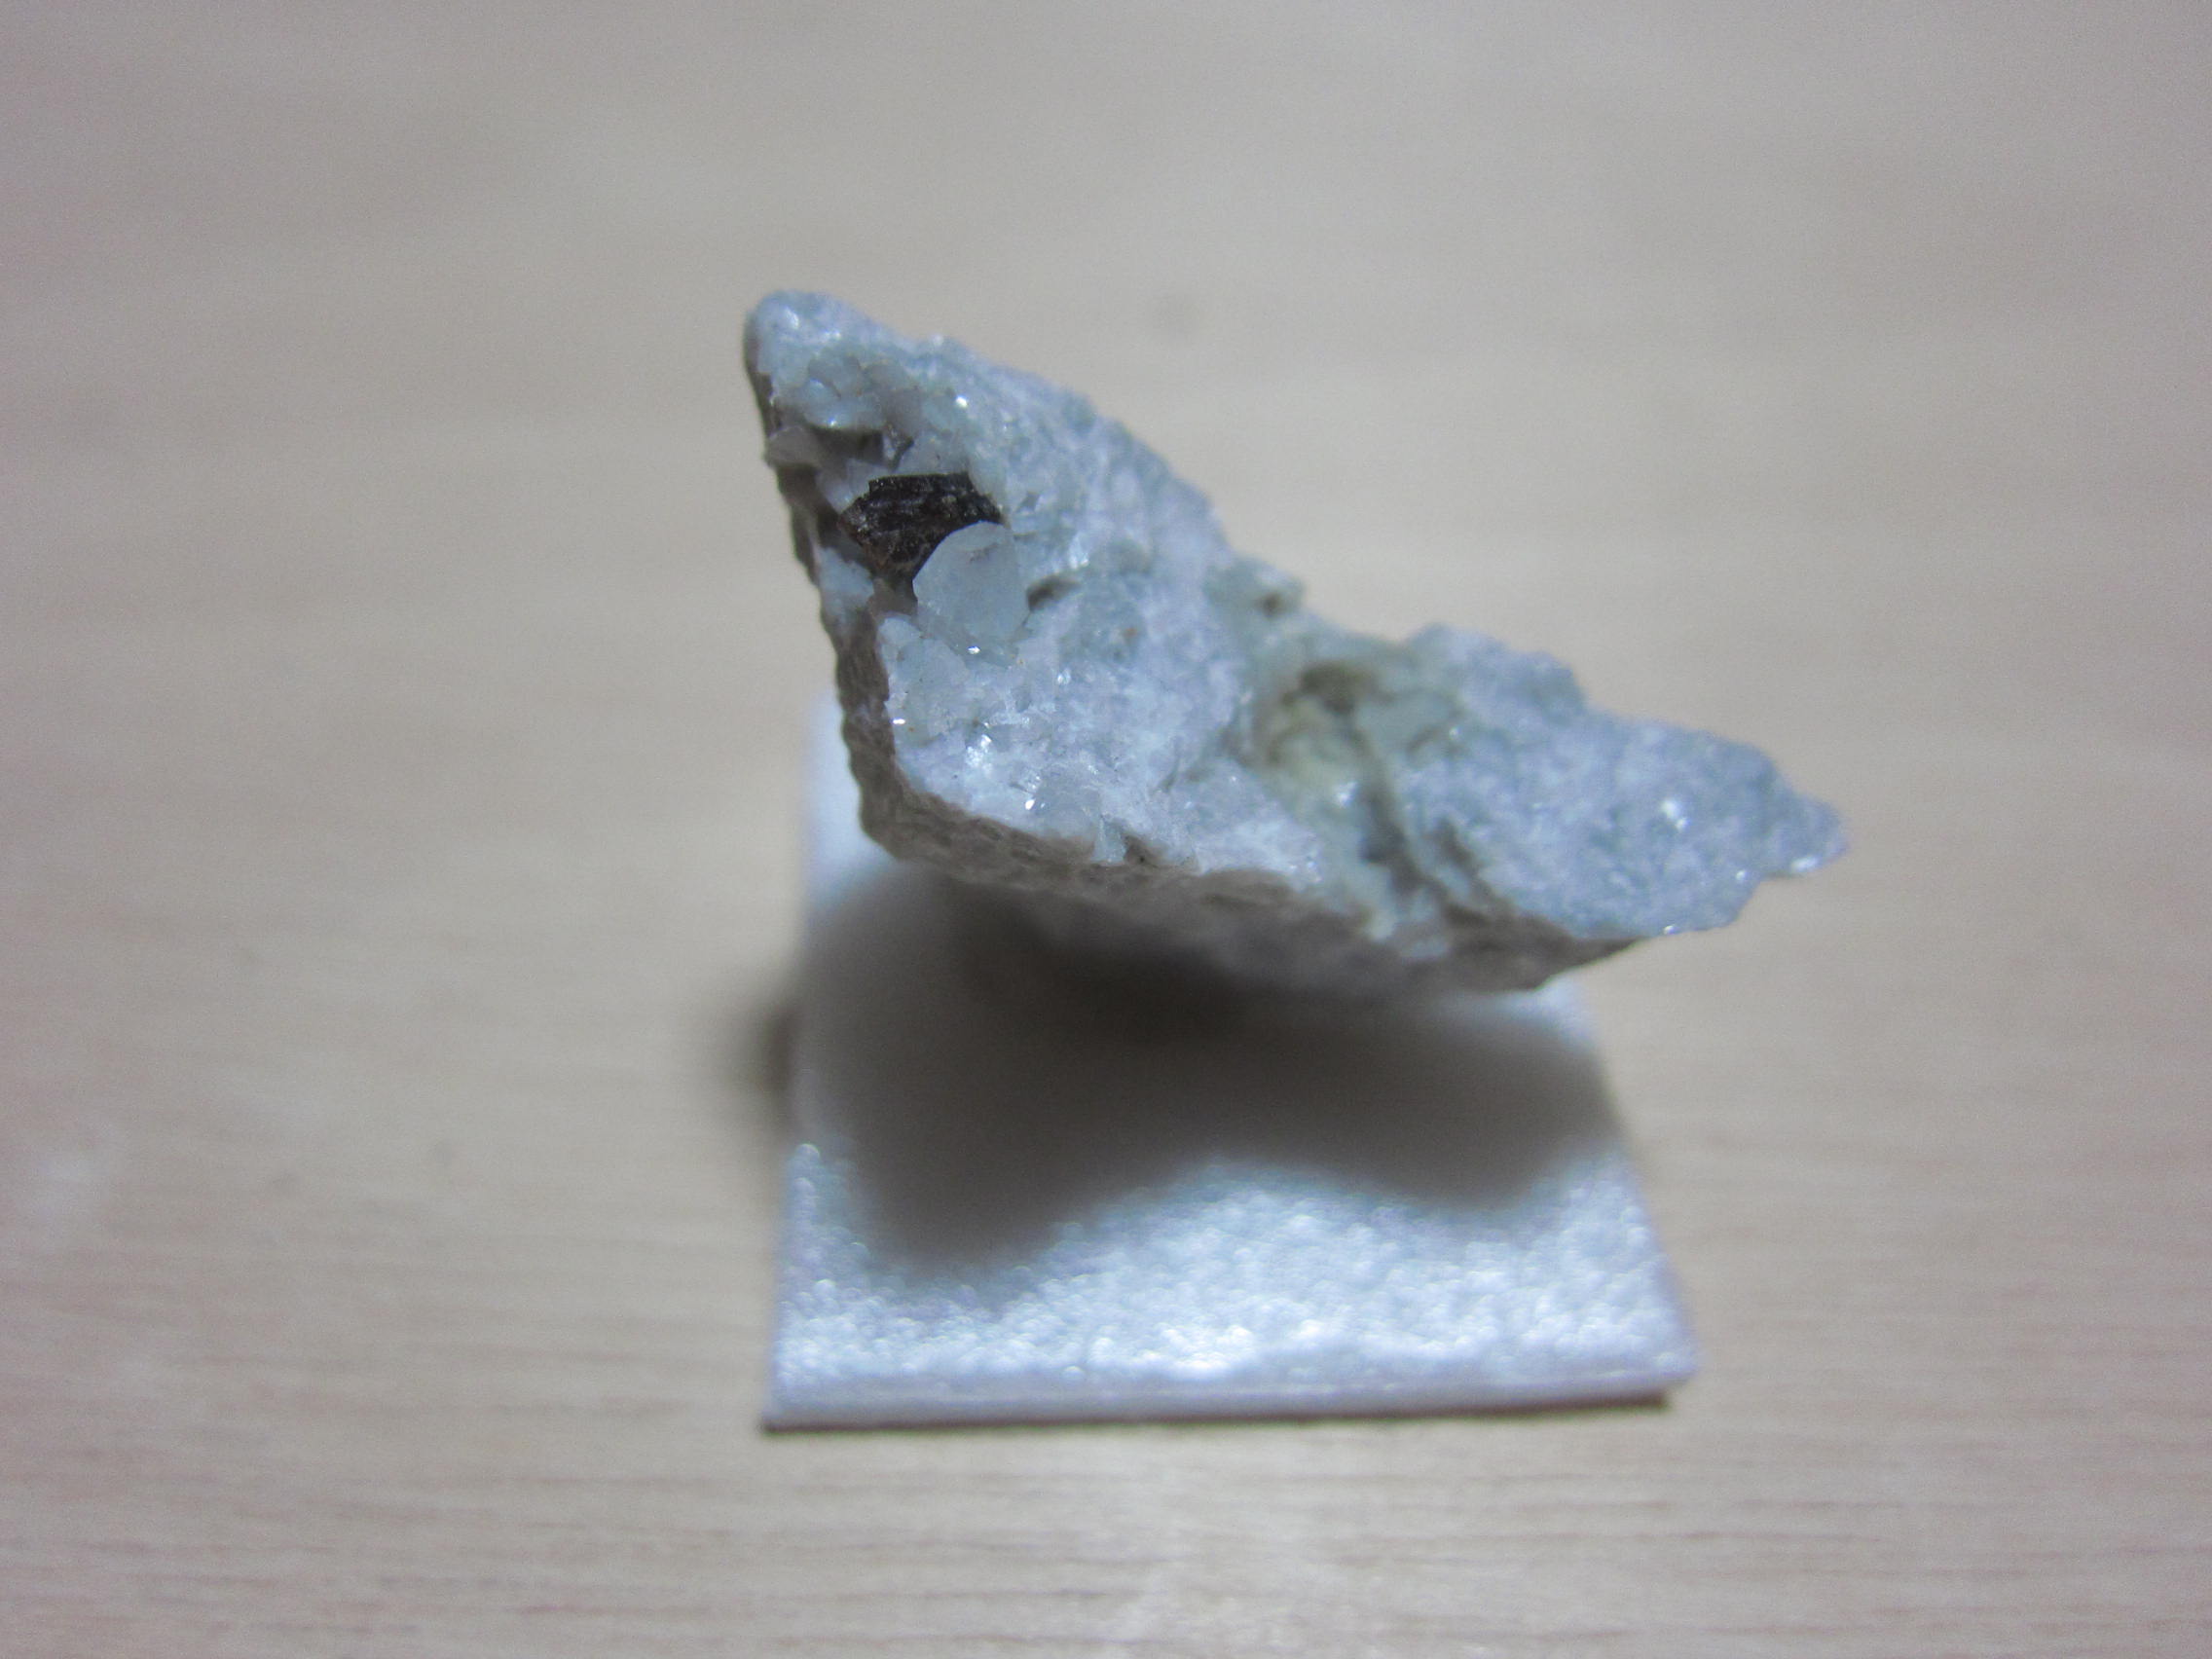 中古ガイガーカウンターと天然放射性鉱物フランスの褐簾石(カツレン石)